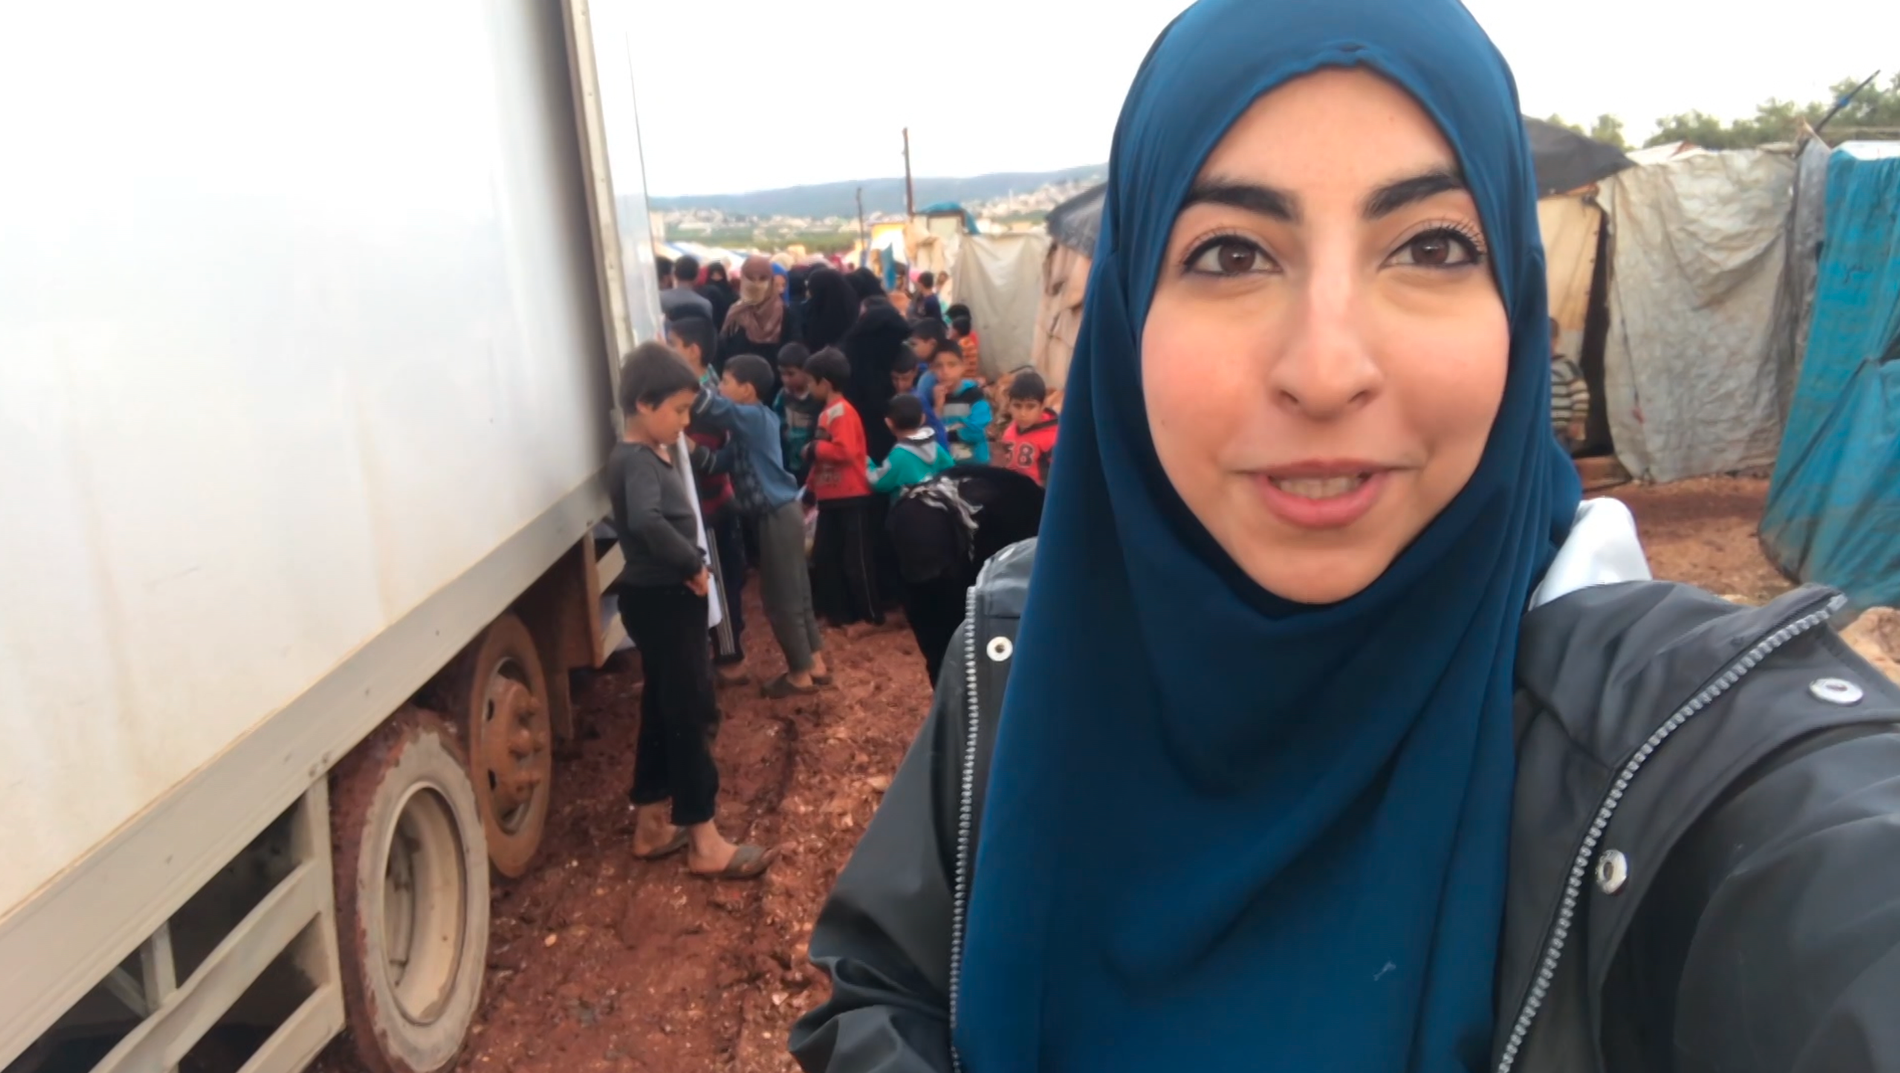 Israa Abdali åker ned till Syrien och hjälper till att dela ut hjälpsändningen på plats, och visar upp för sina följare att hjälpen kommer fram. 